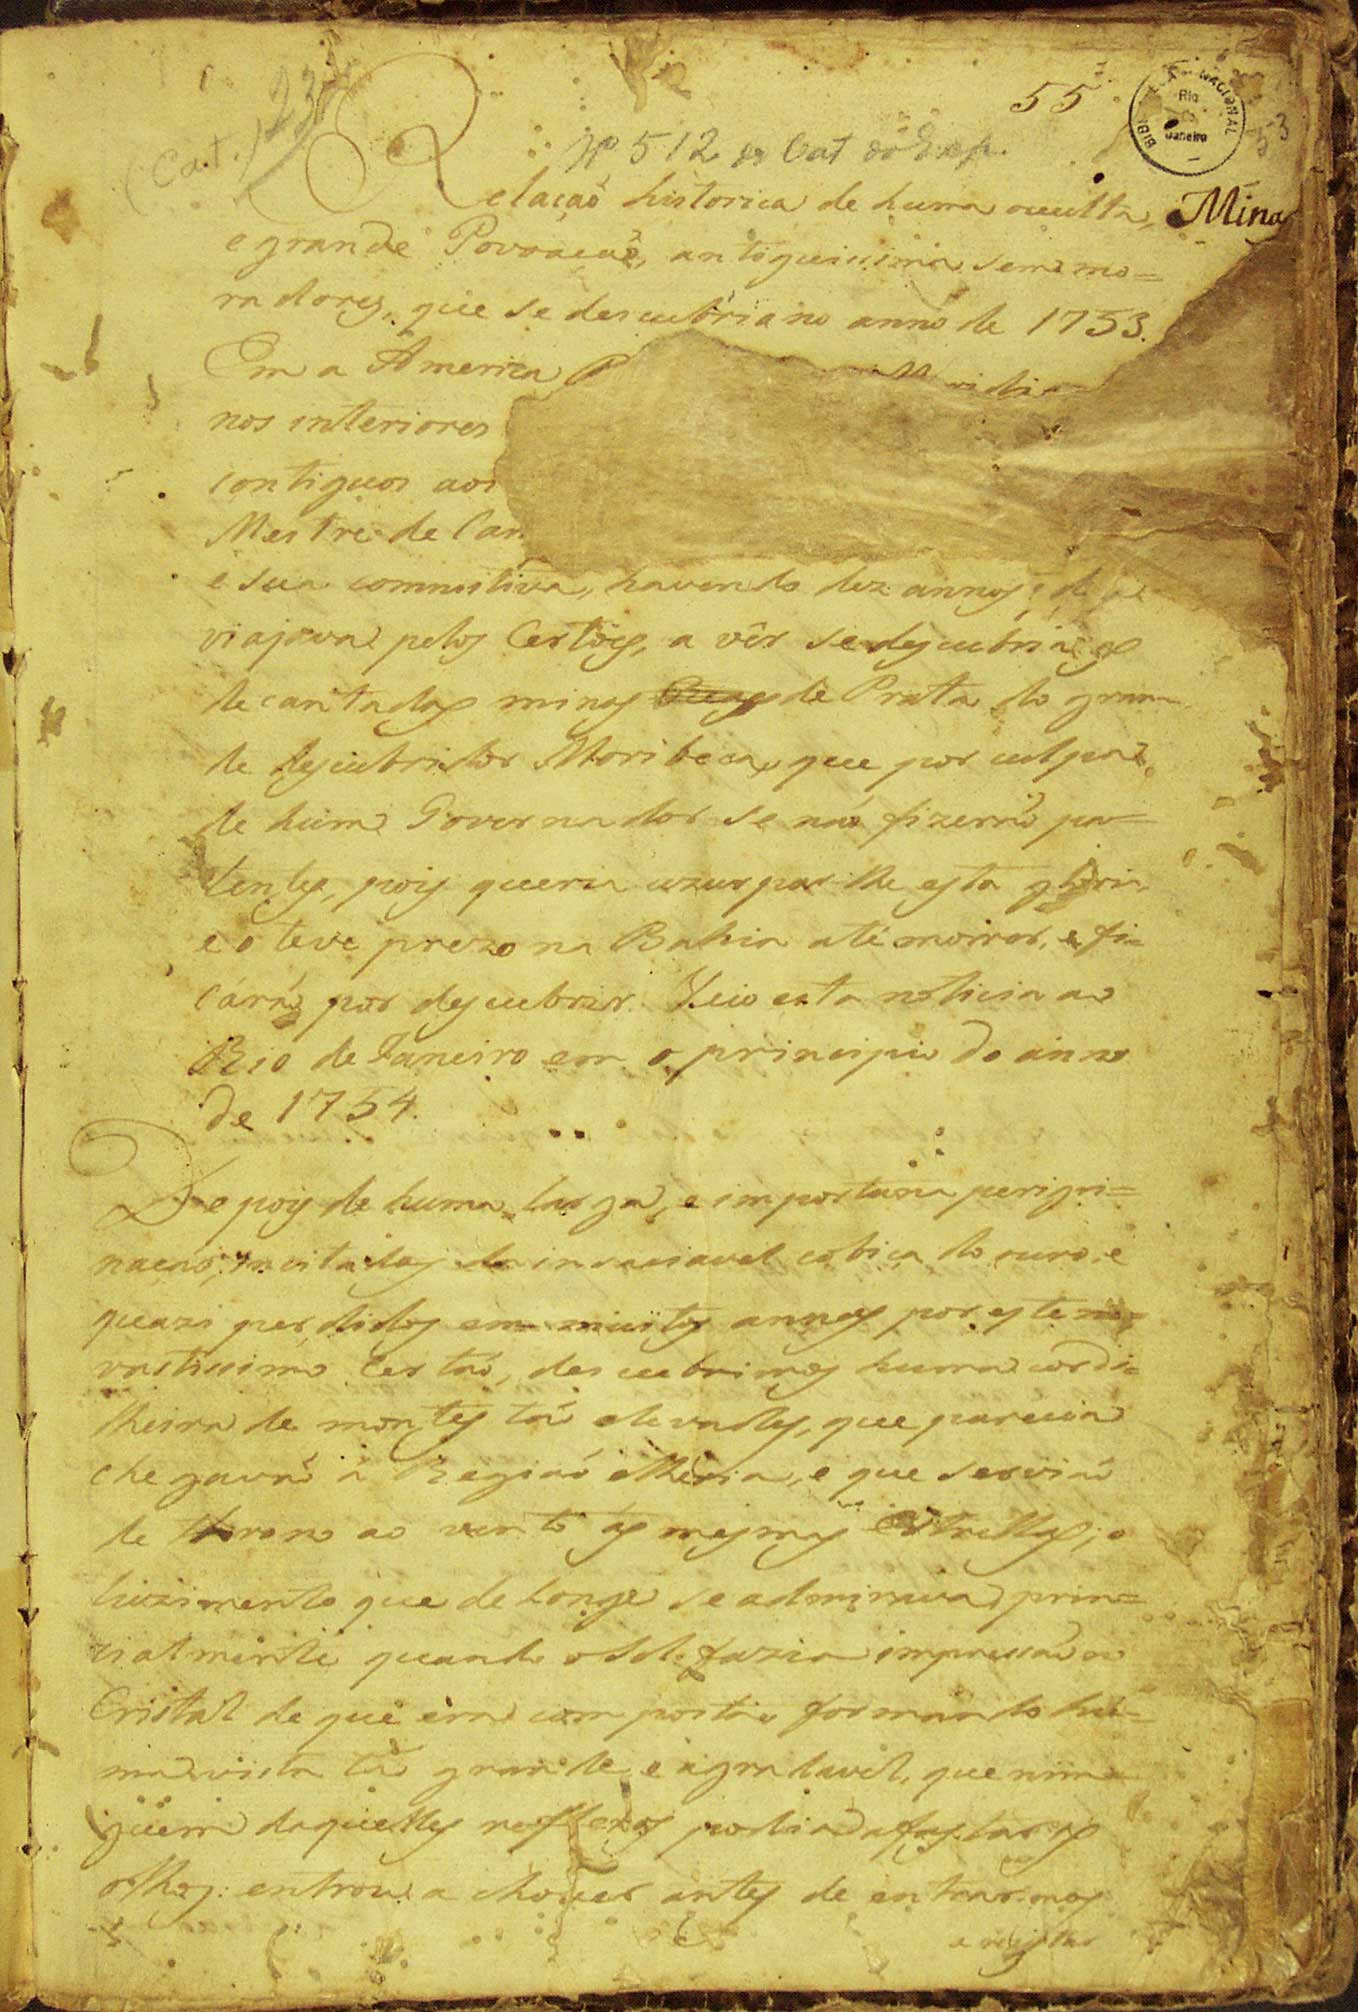 Página 1 del Manuscrito 512, publicado en 1753 (autor desconocido).